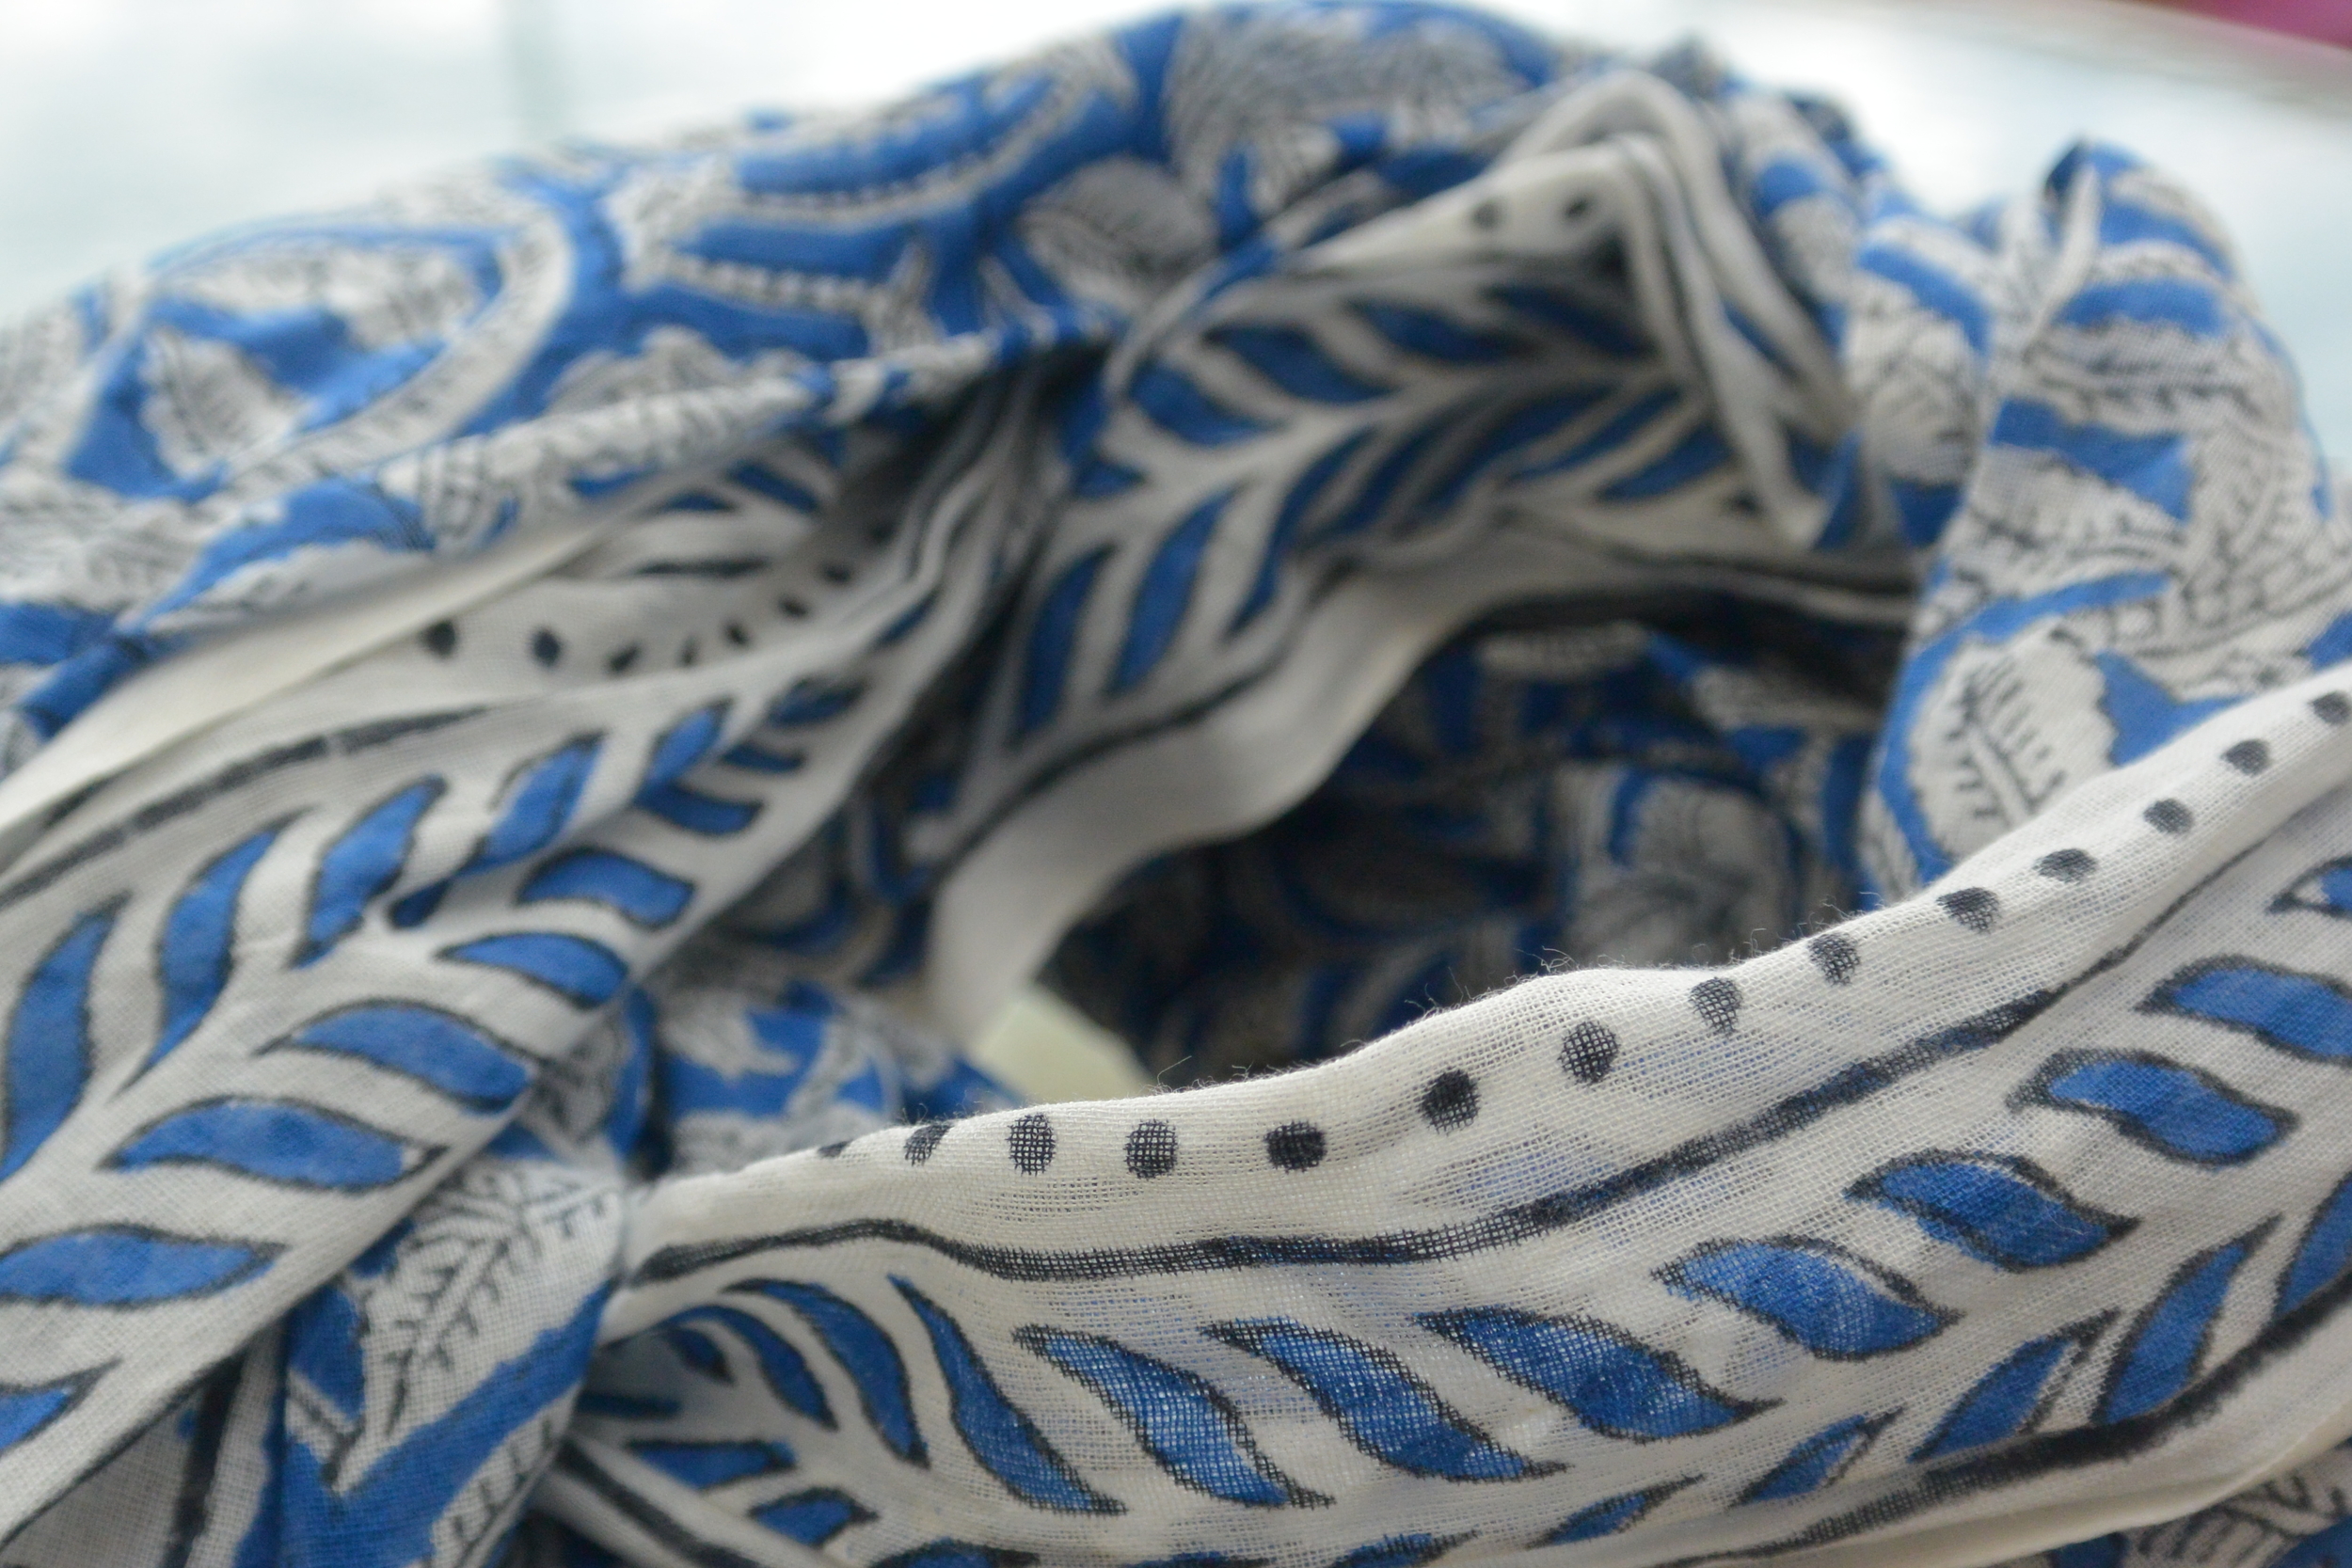 foulard zen ethic etole-blockprint-leaf-100-coton-110x180-cm une idee cadeau chez ugo et lea   (5)